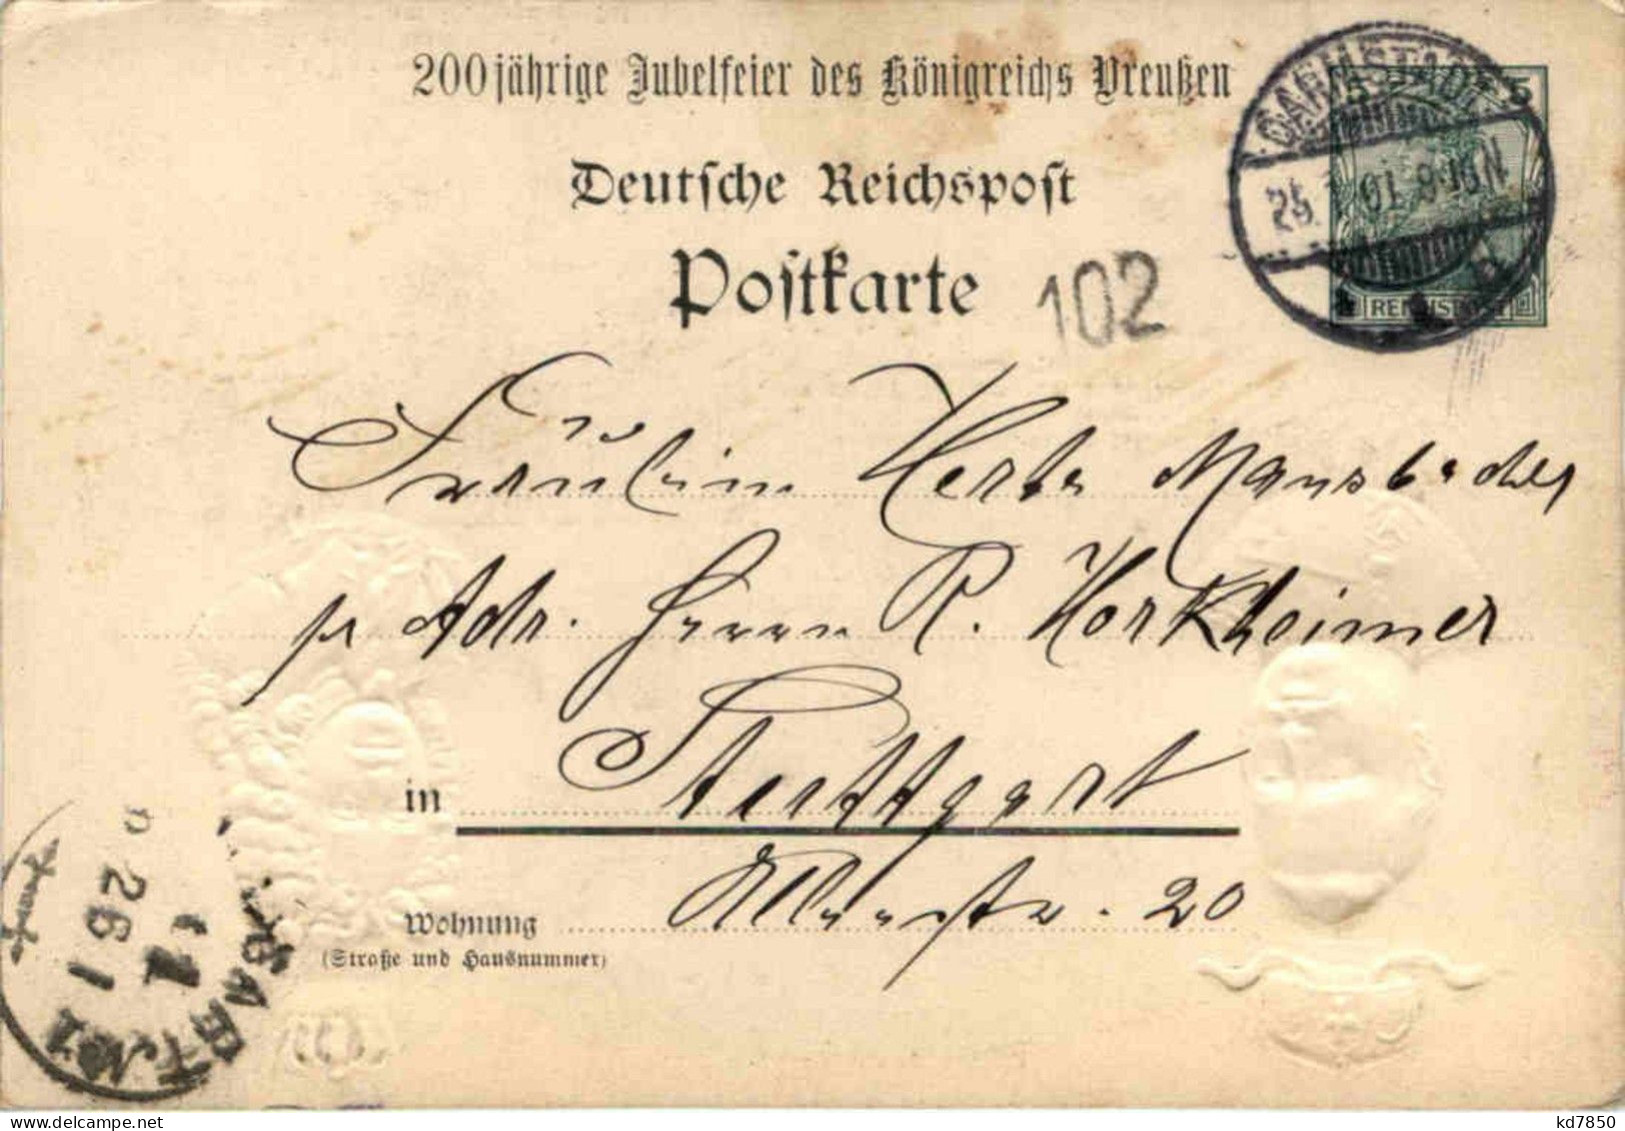 Erinnerung 200 Jährige Gedenkfeier - Friedrich III Wilhelm II - Litho Prägekarte - Königshäuser